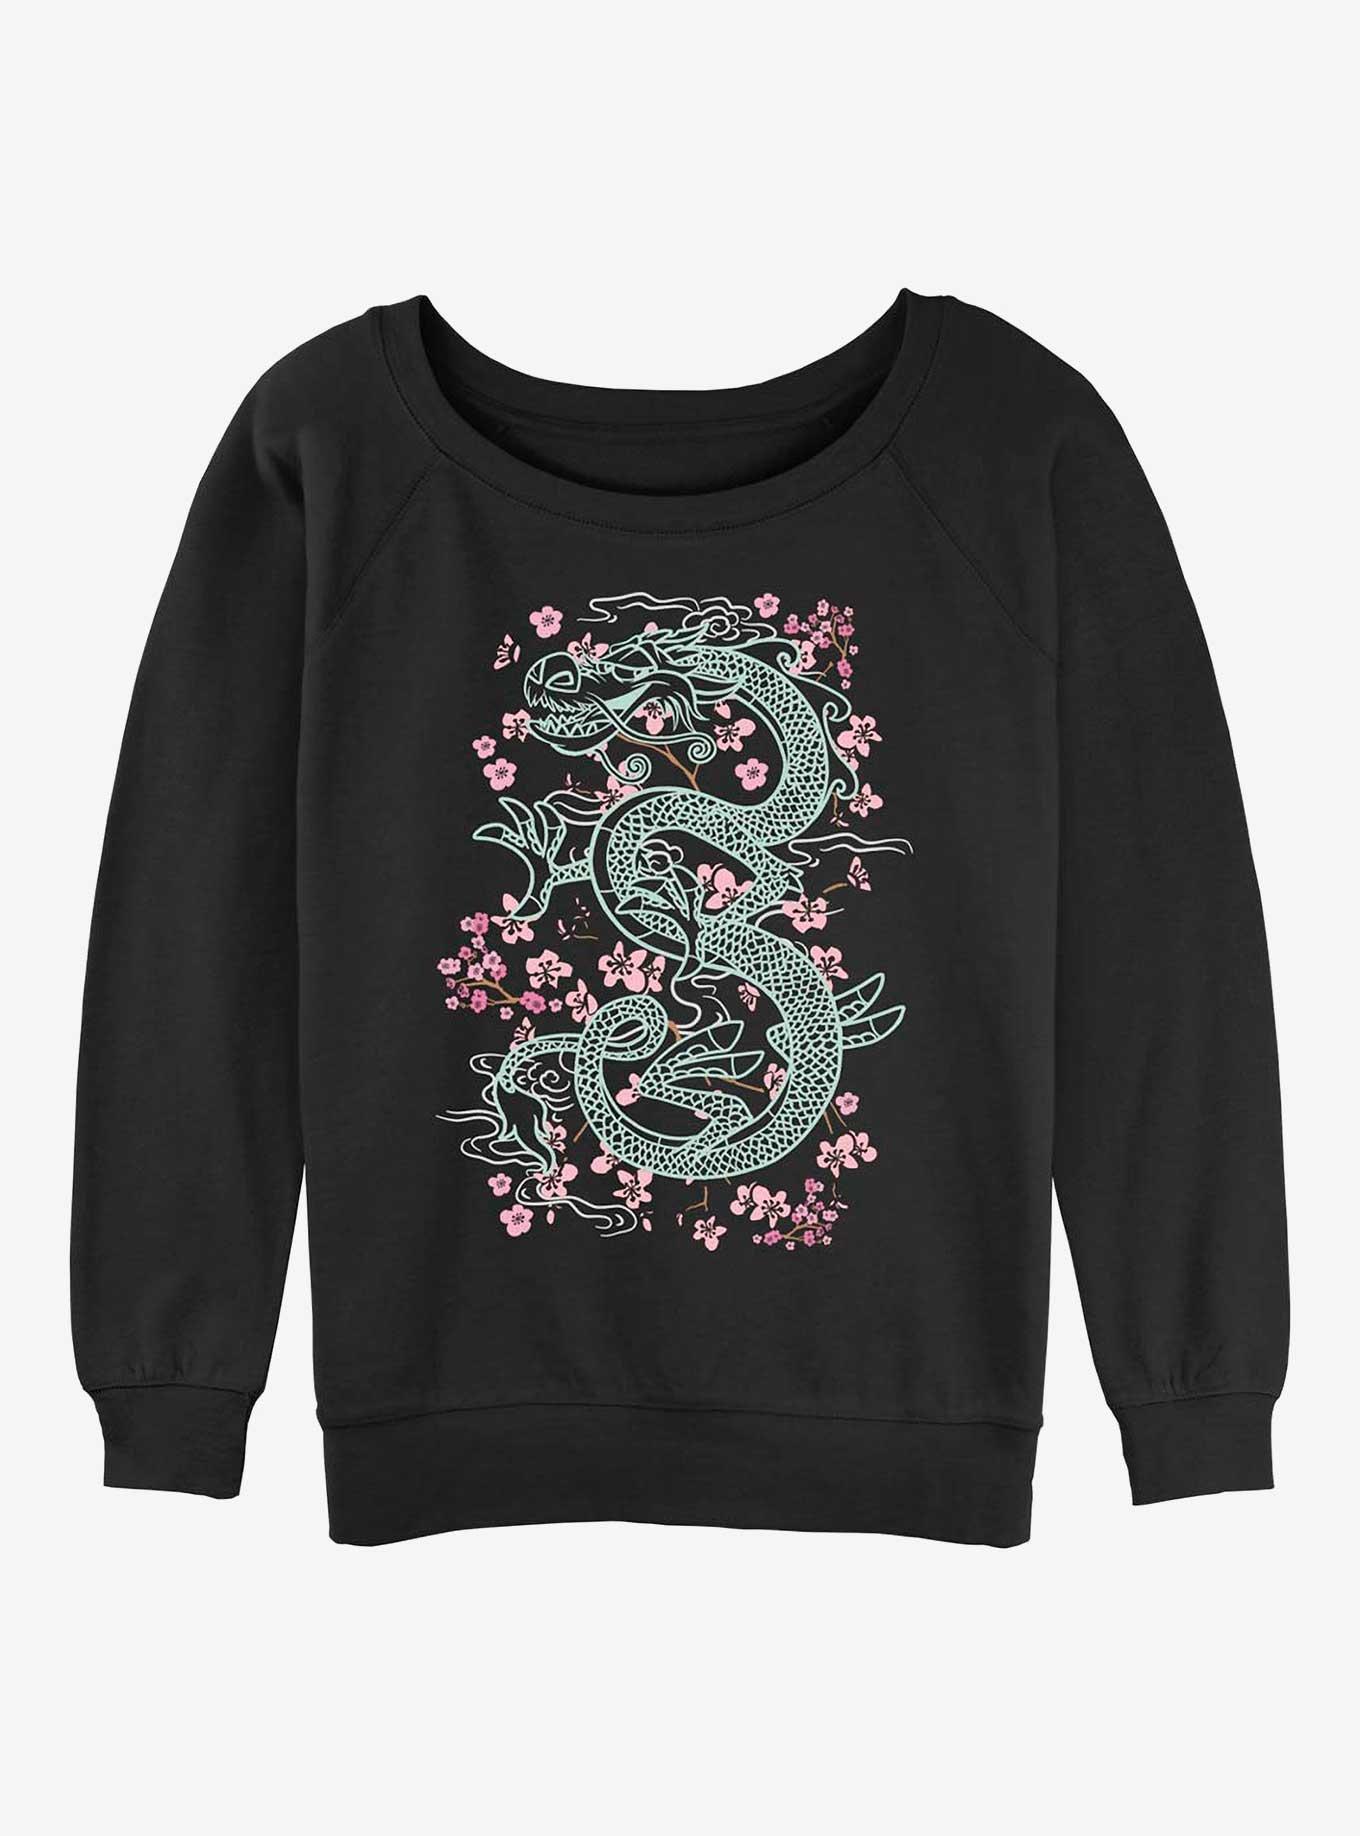 Disney Mulan Mushu Floral Girls Slouchy Sweatshirt